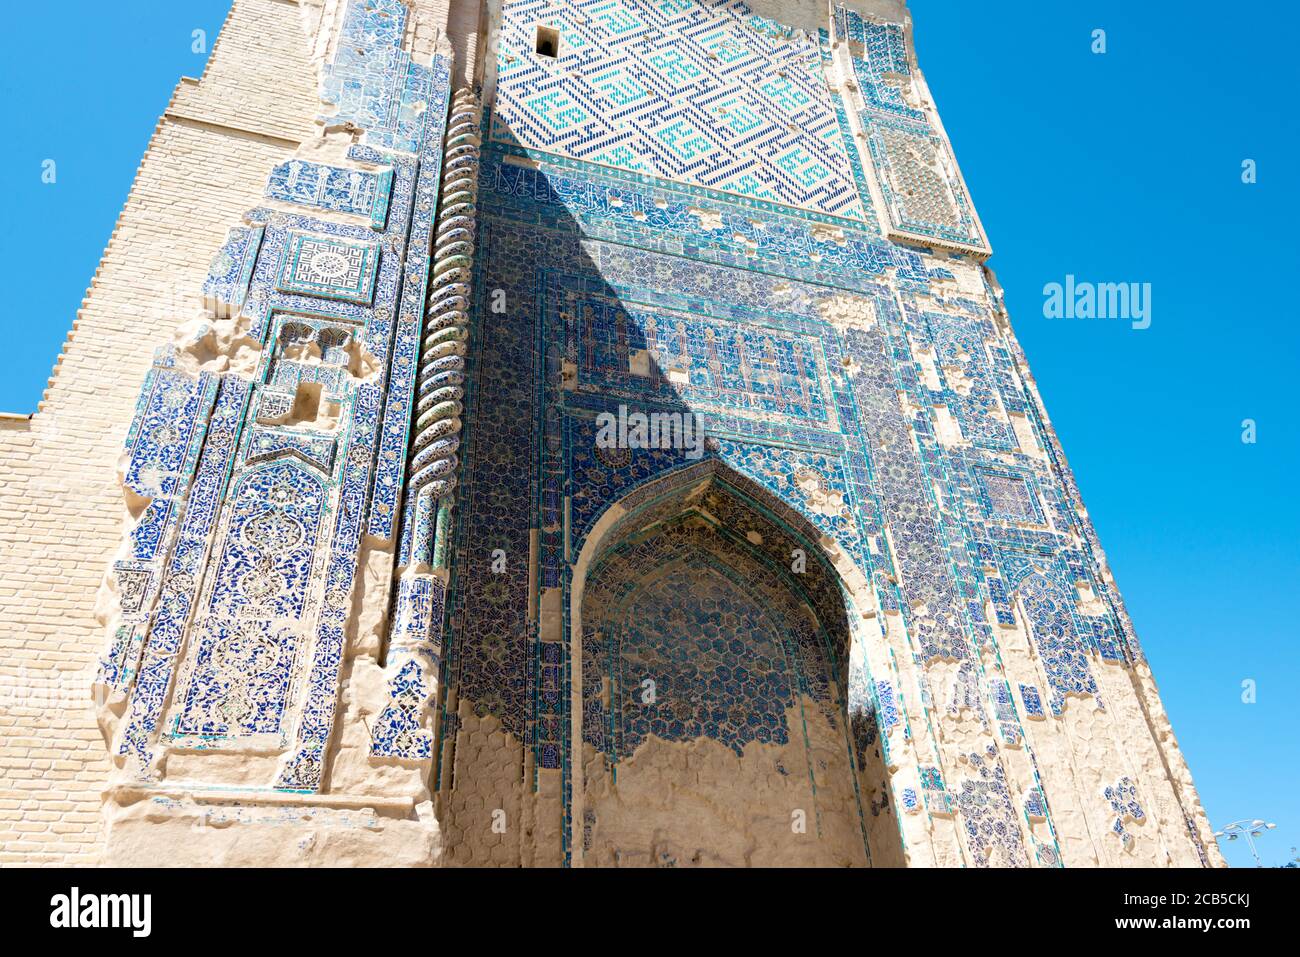 Shakhrisabz, Uzbekistan - dettaglio delle rovine del Palazzo di AK-Saray a Shakhrisabz, Uzbekistan. E' parte del Sito Patrimonio Mondiale dell'Umanita'. Foto Stock